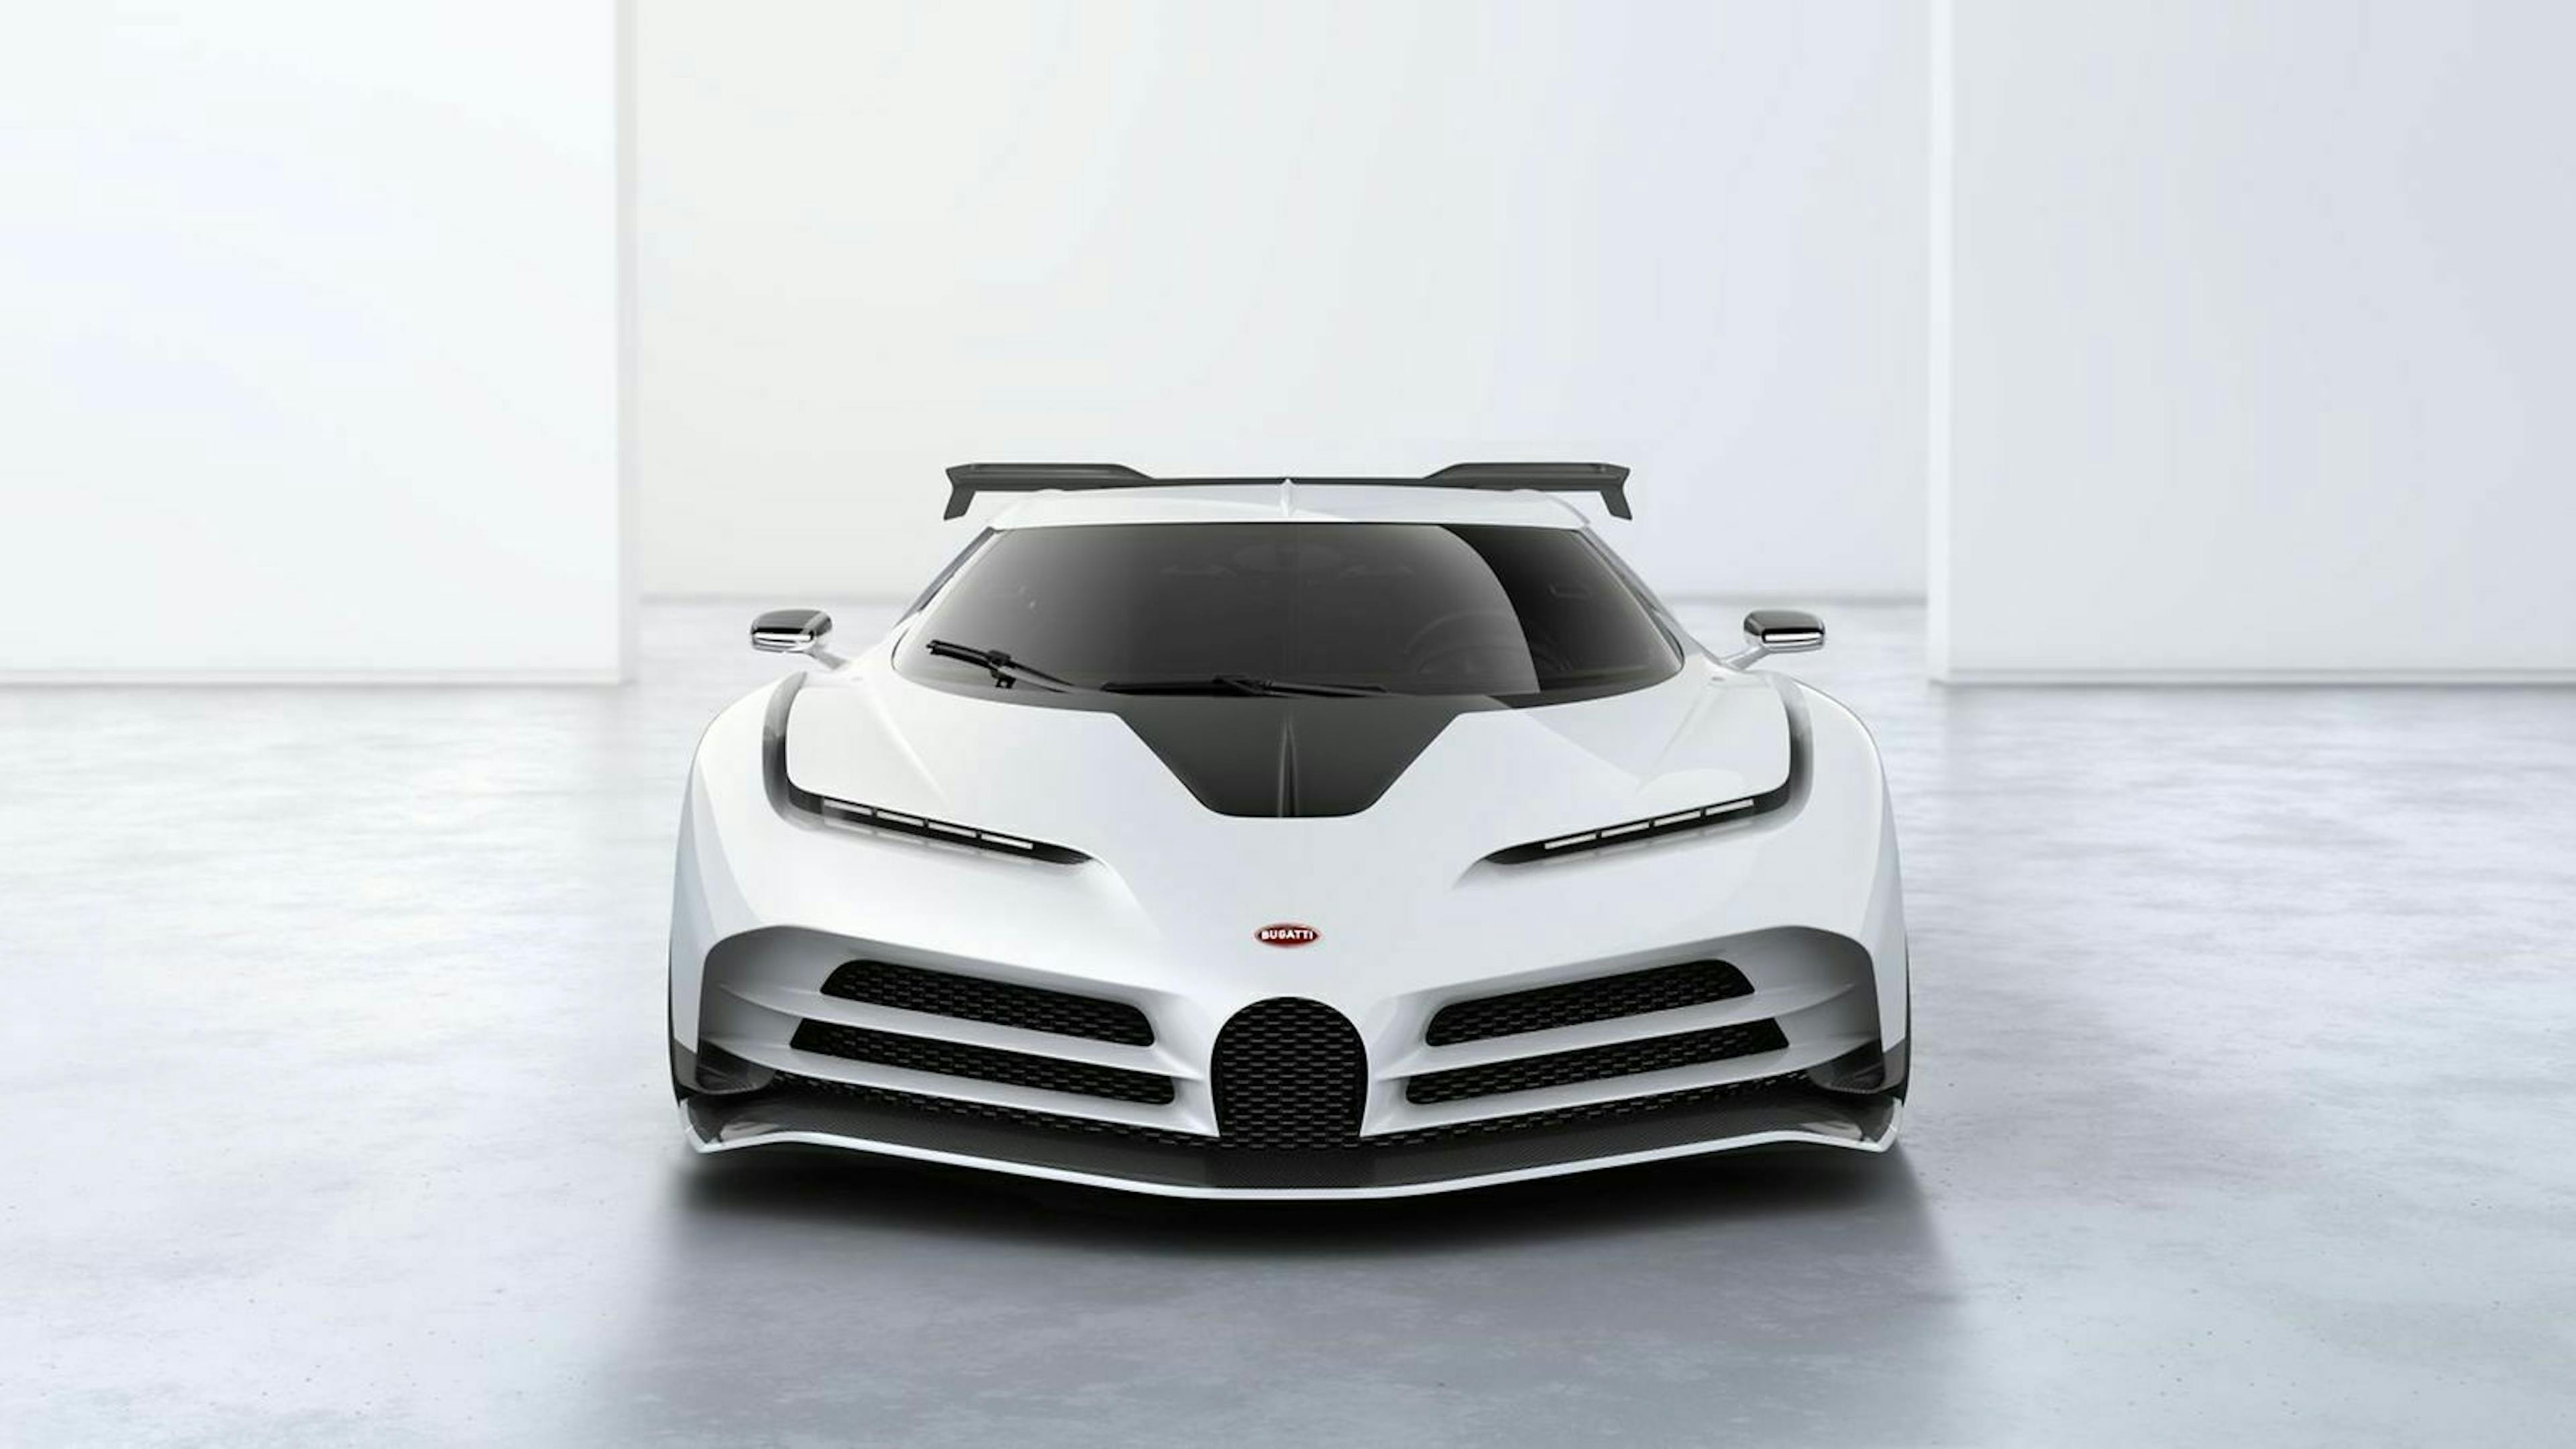 Neuneinhalb Millionen Euro verlangt Bugatti für das Jubiläumsmodell